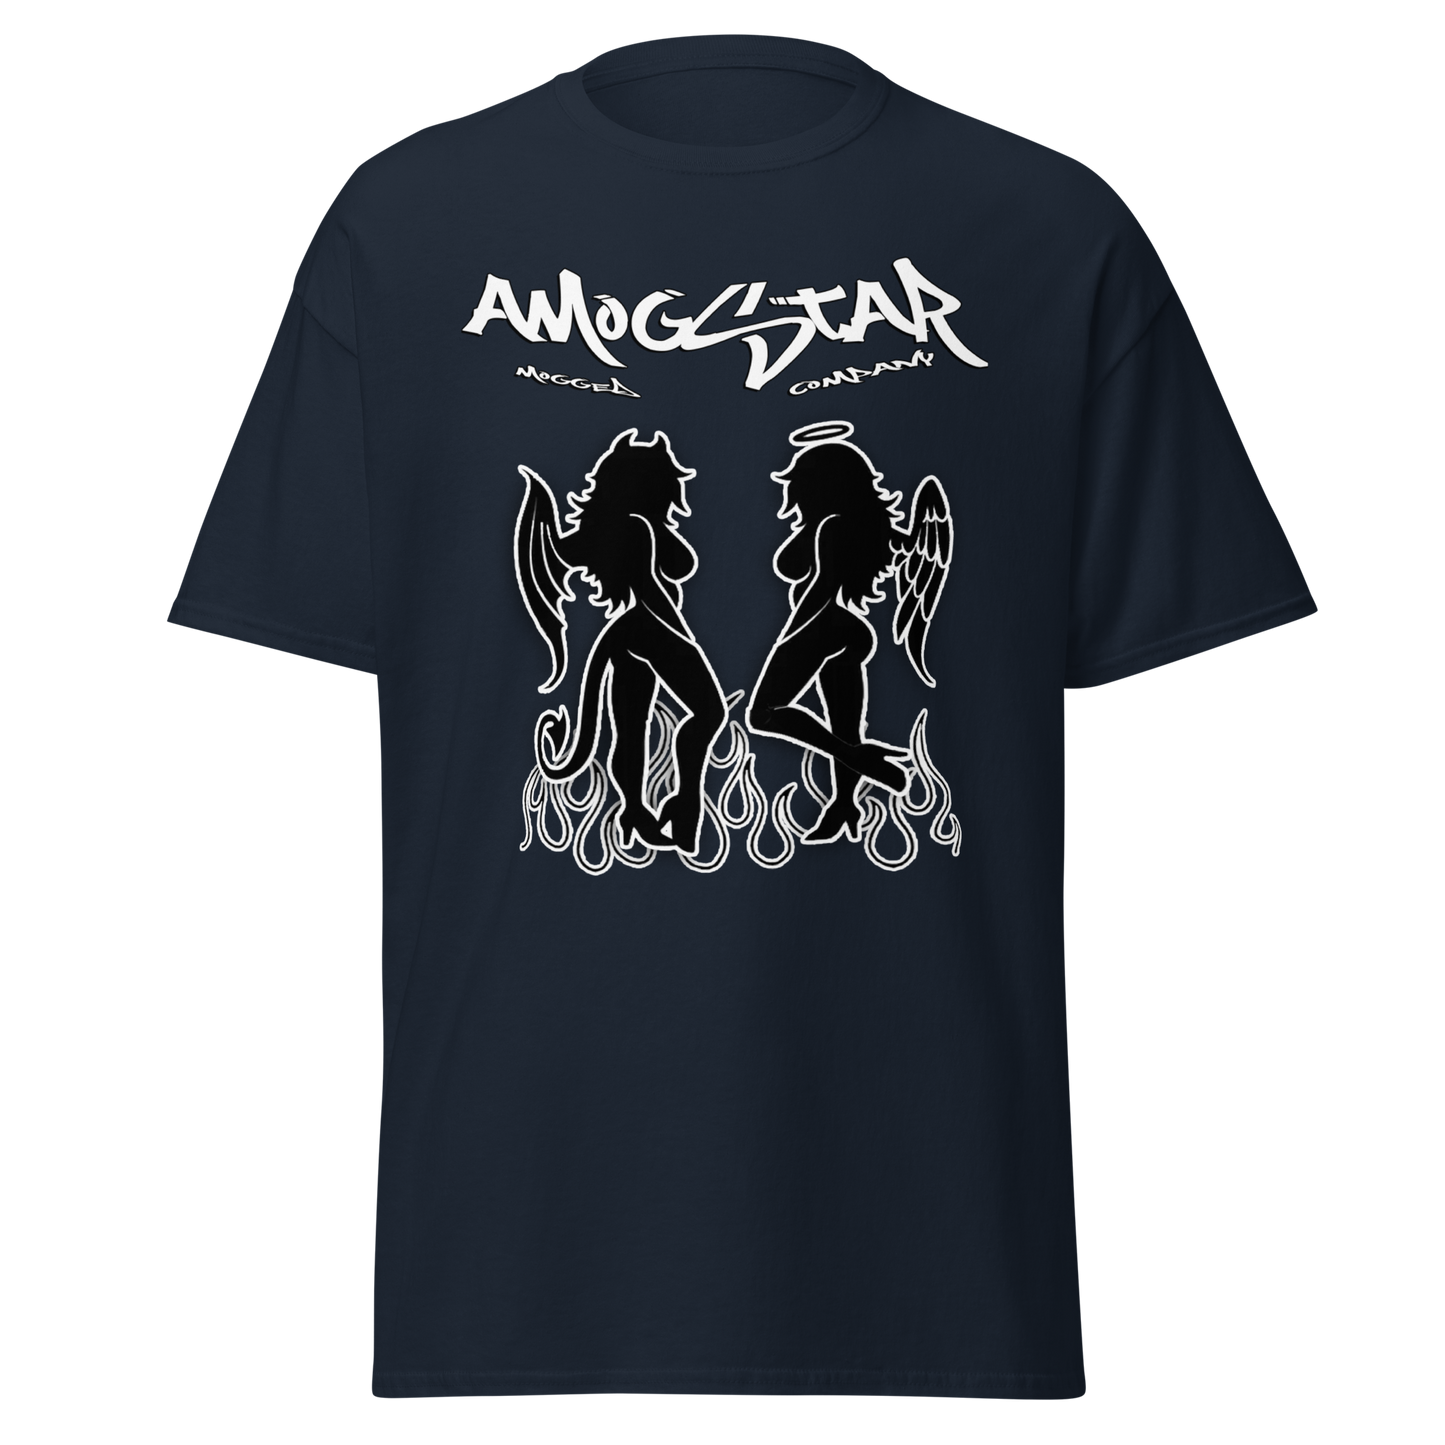 OG - AmogStar Oversized Shirt